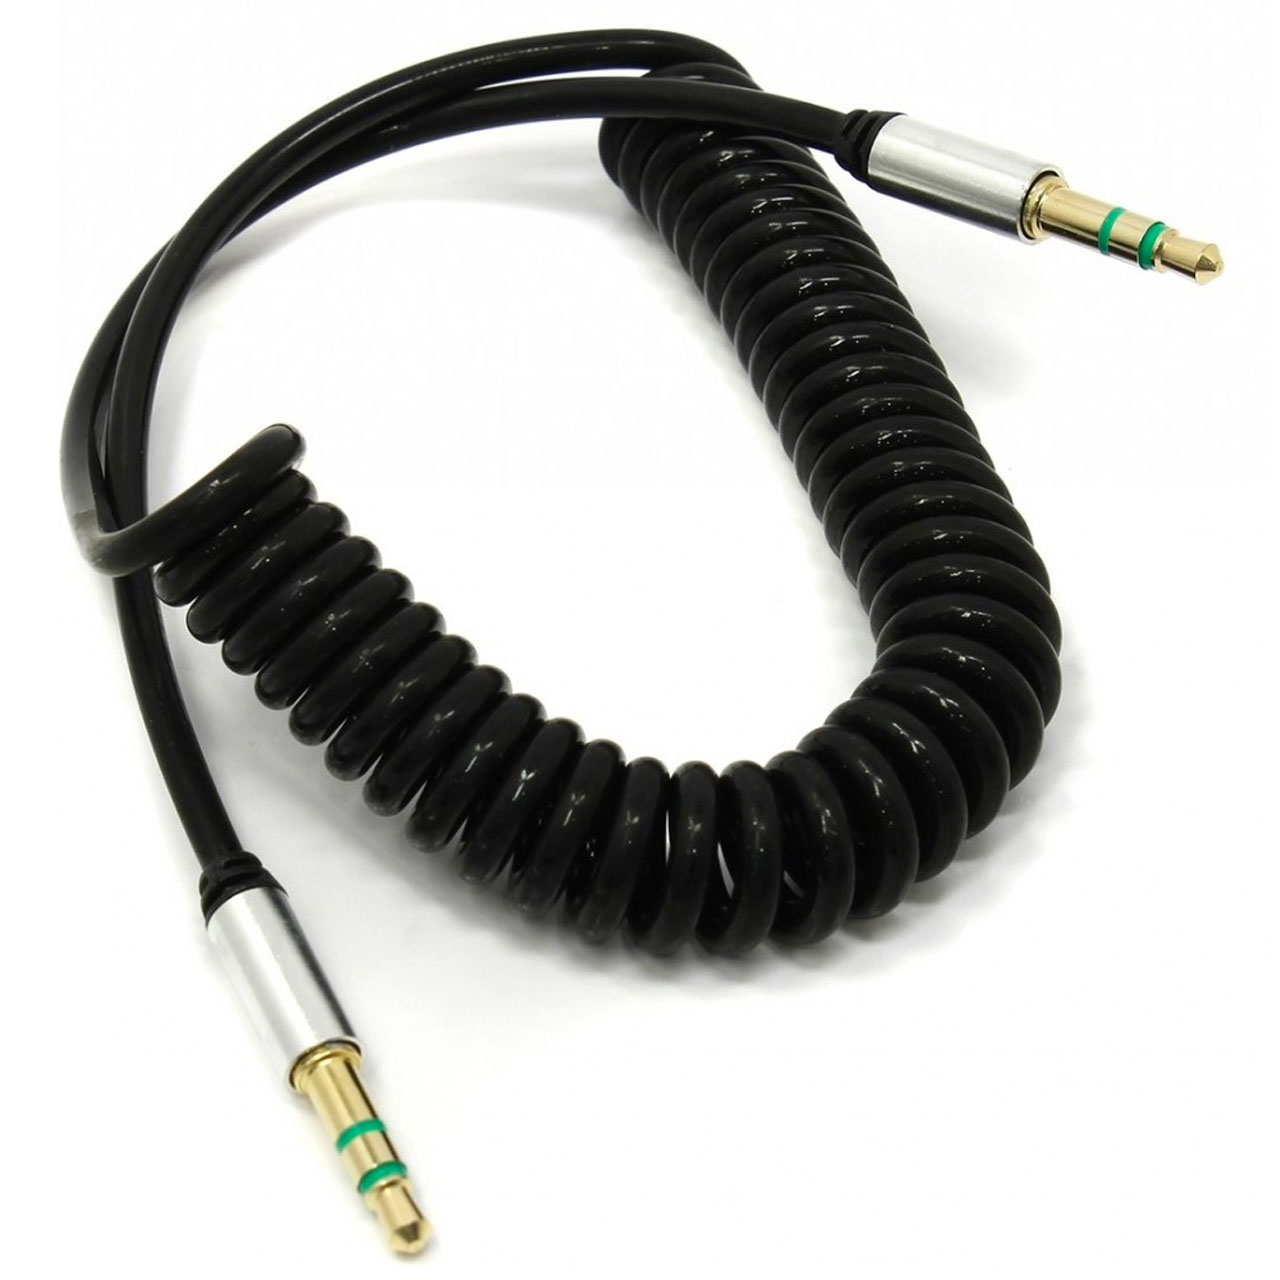 AUX кабель JD-64 витой (пружина) Jack 3.5" - 3.5", длина 1.8 метра, цвет черный.